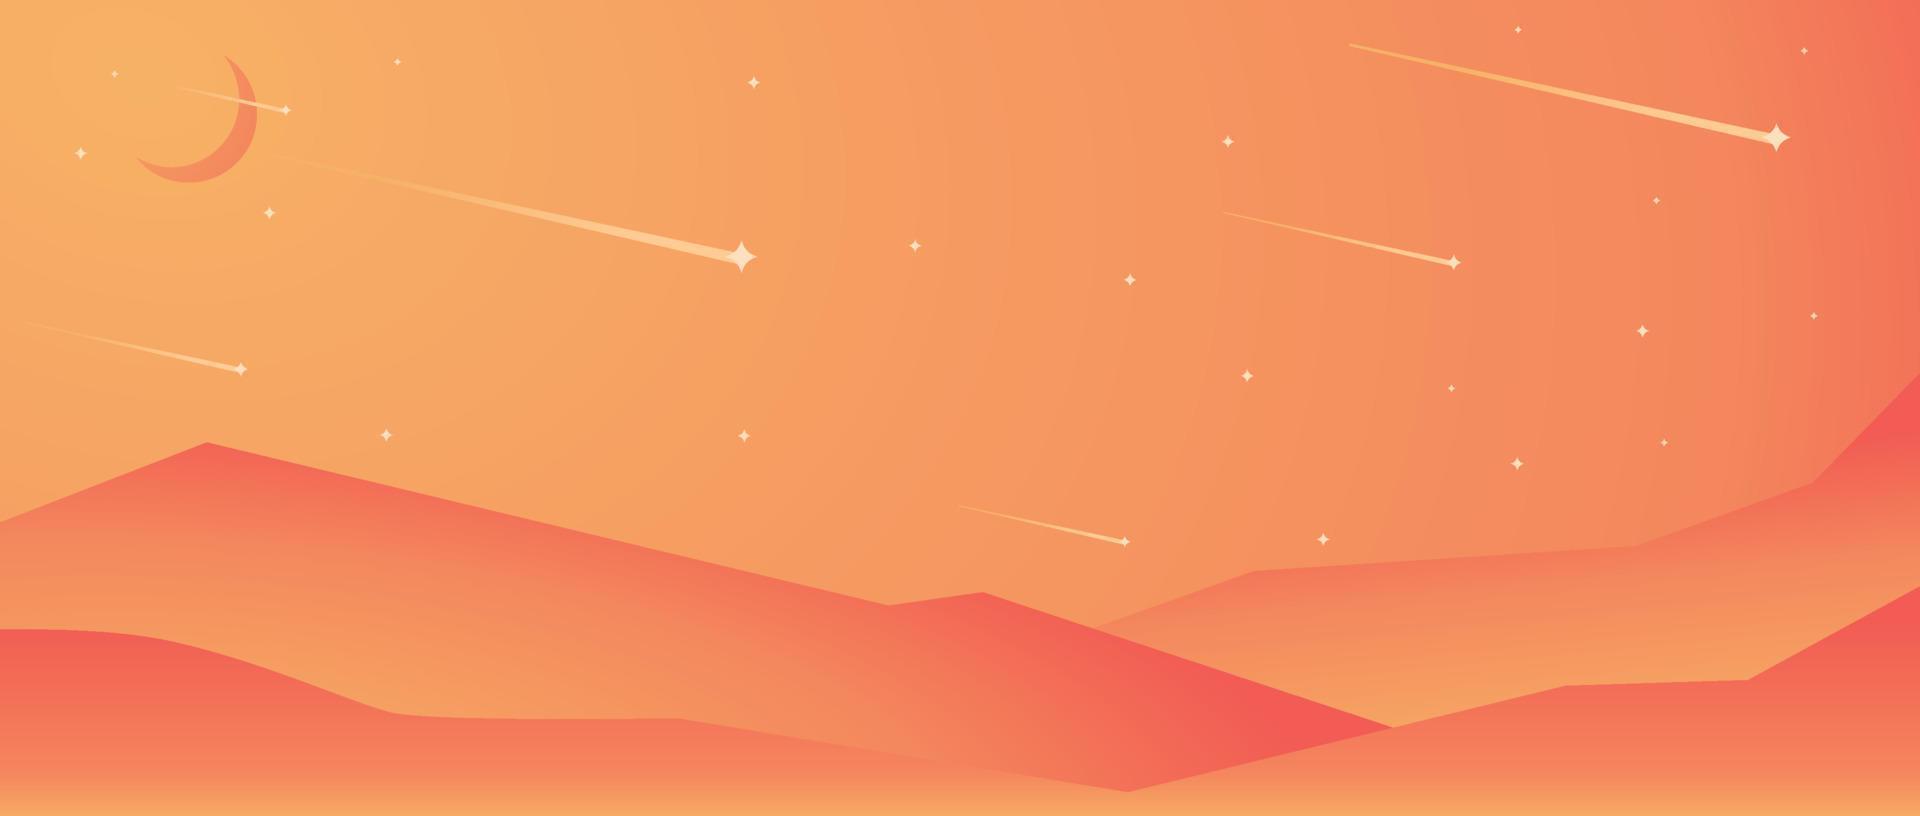 Wüstenlandschaft Hintergrund Vektorgrafiken minimalistisch orange Farbverlauf vektor